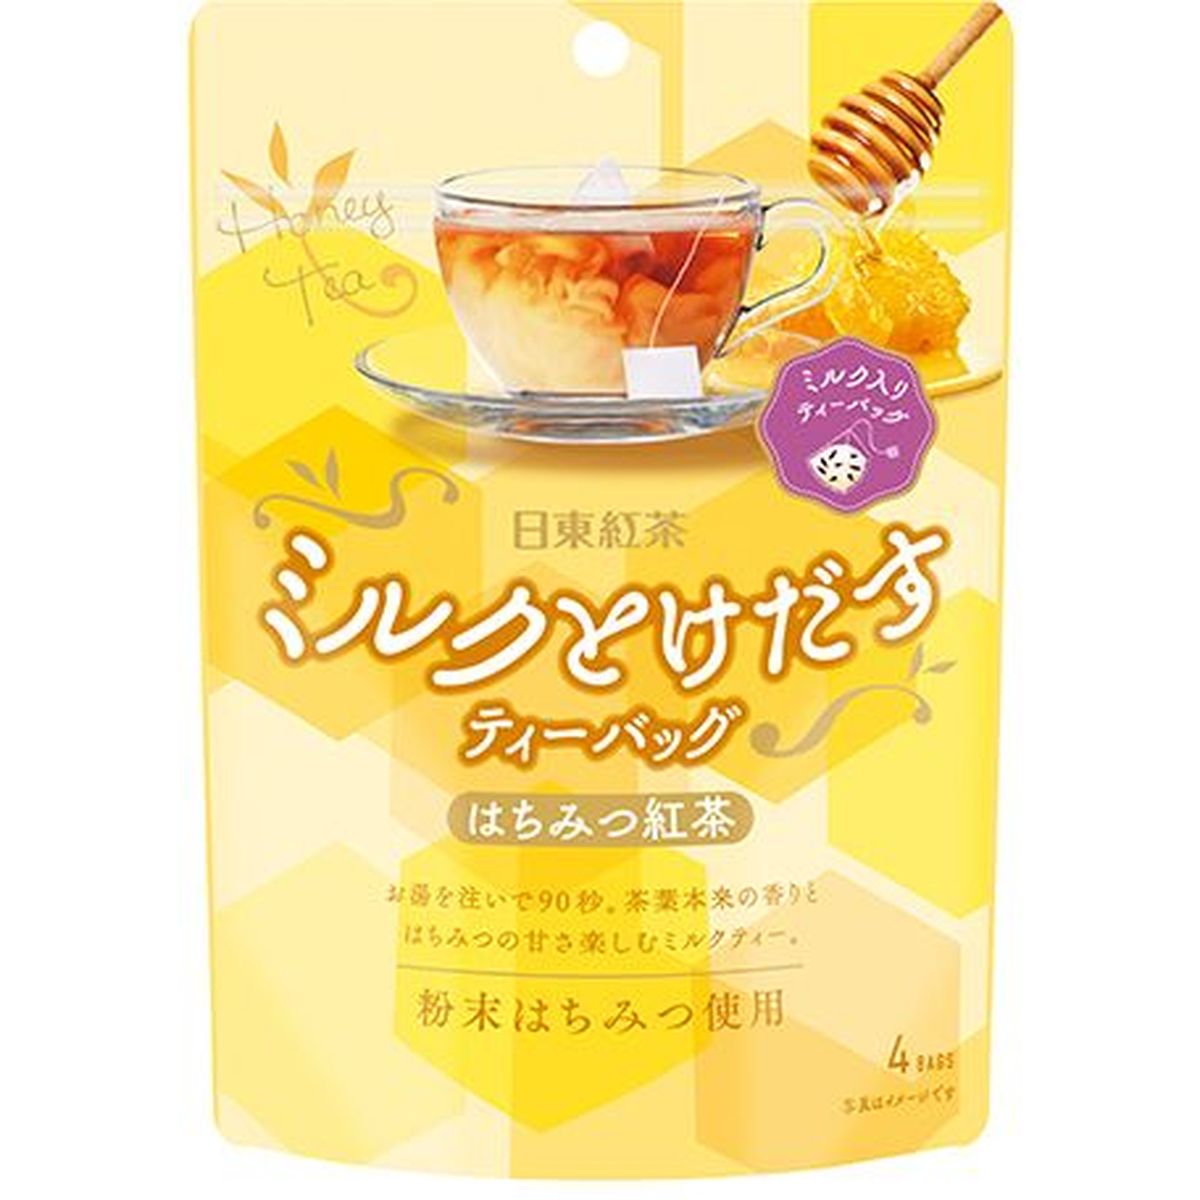 【6個入リ】日東紅茶 ミルクトケダスハチミツ紅茶ティーバッグ 7.2gX4